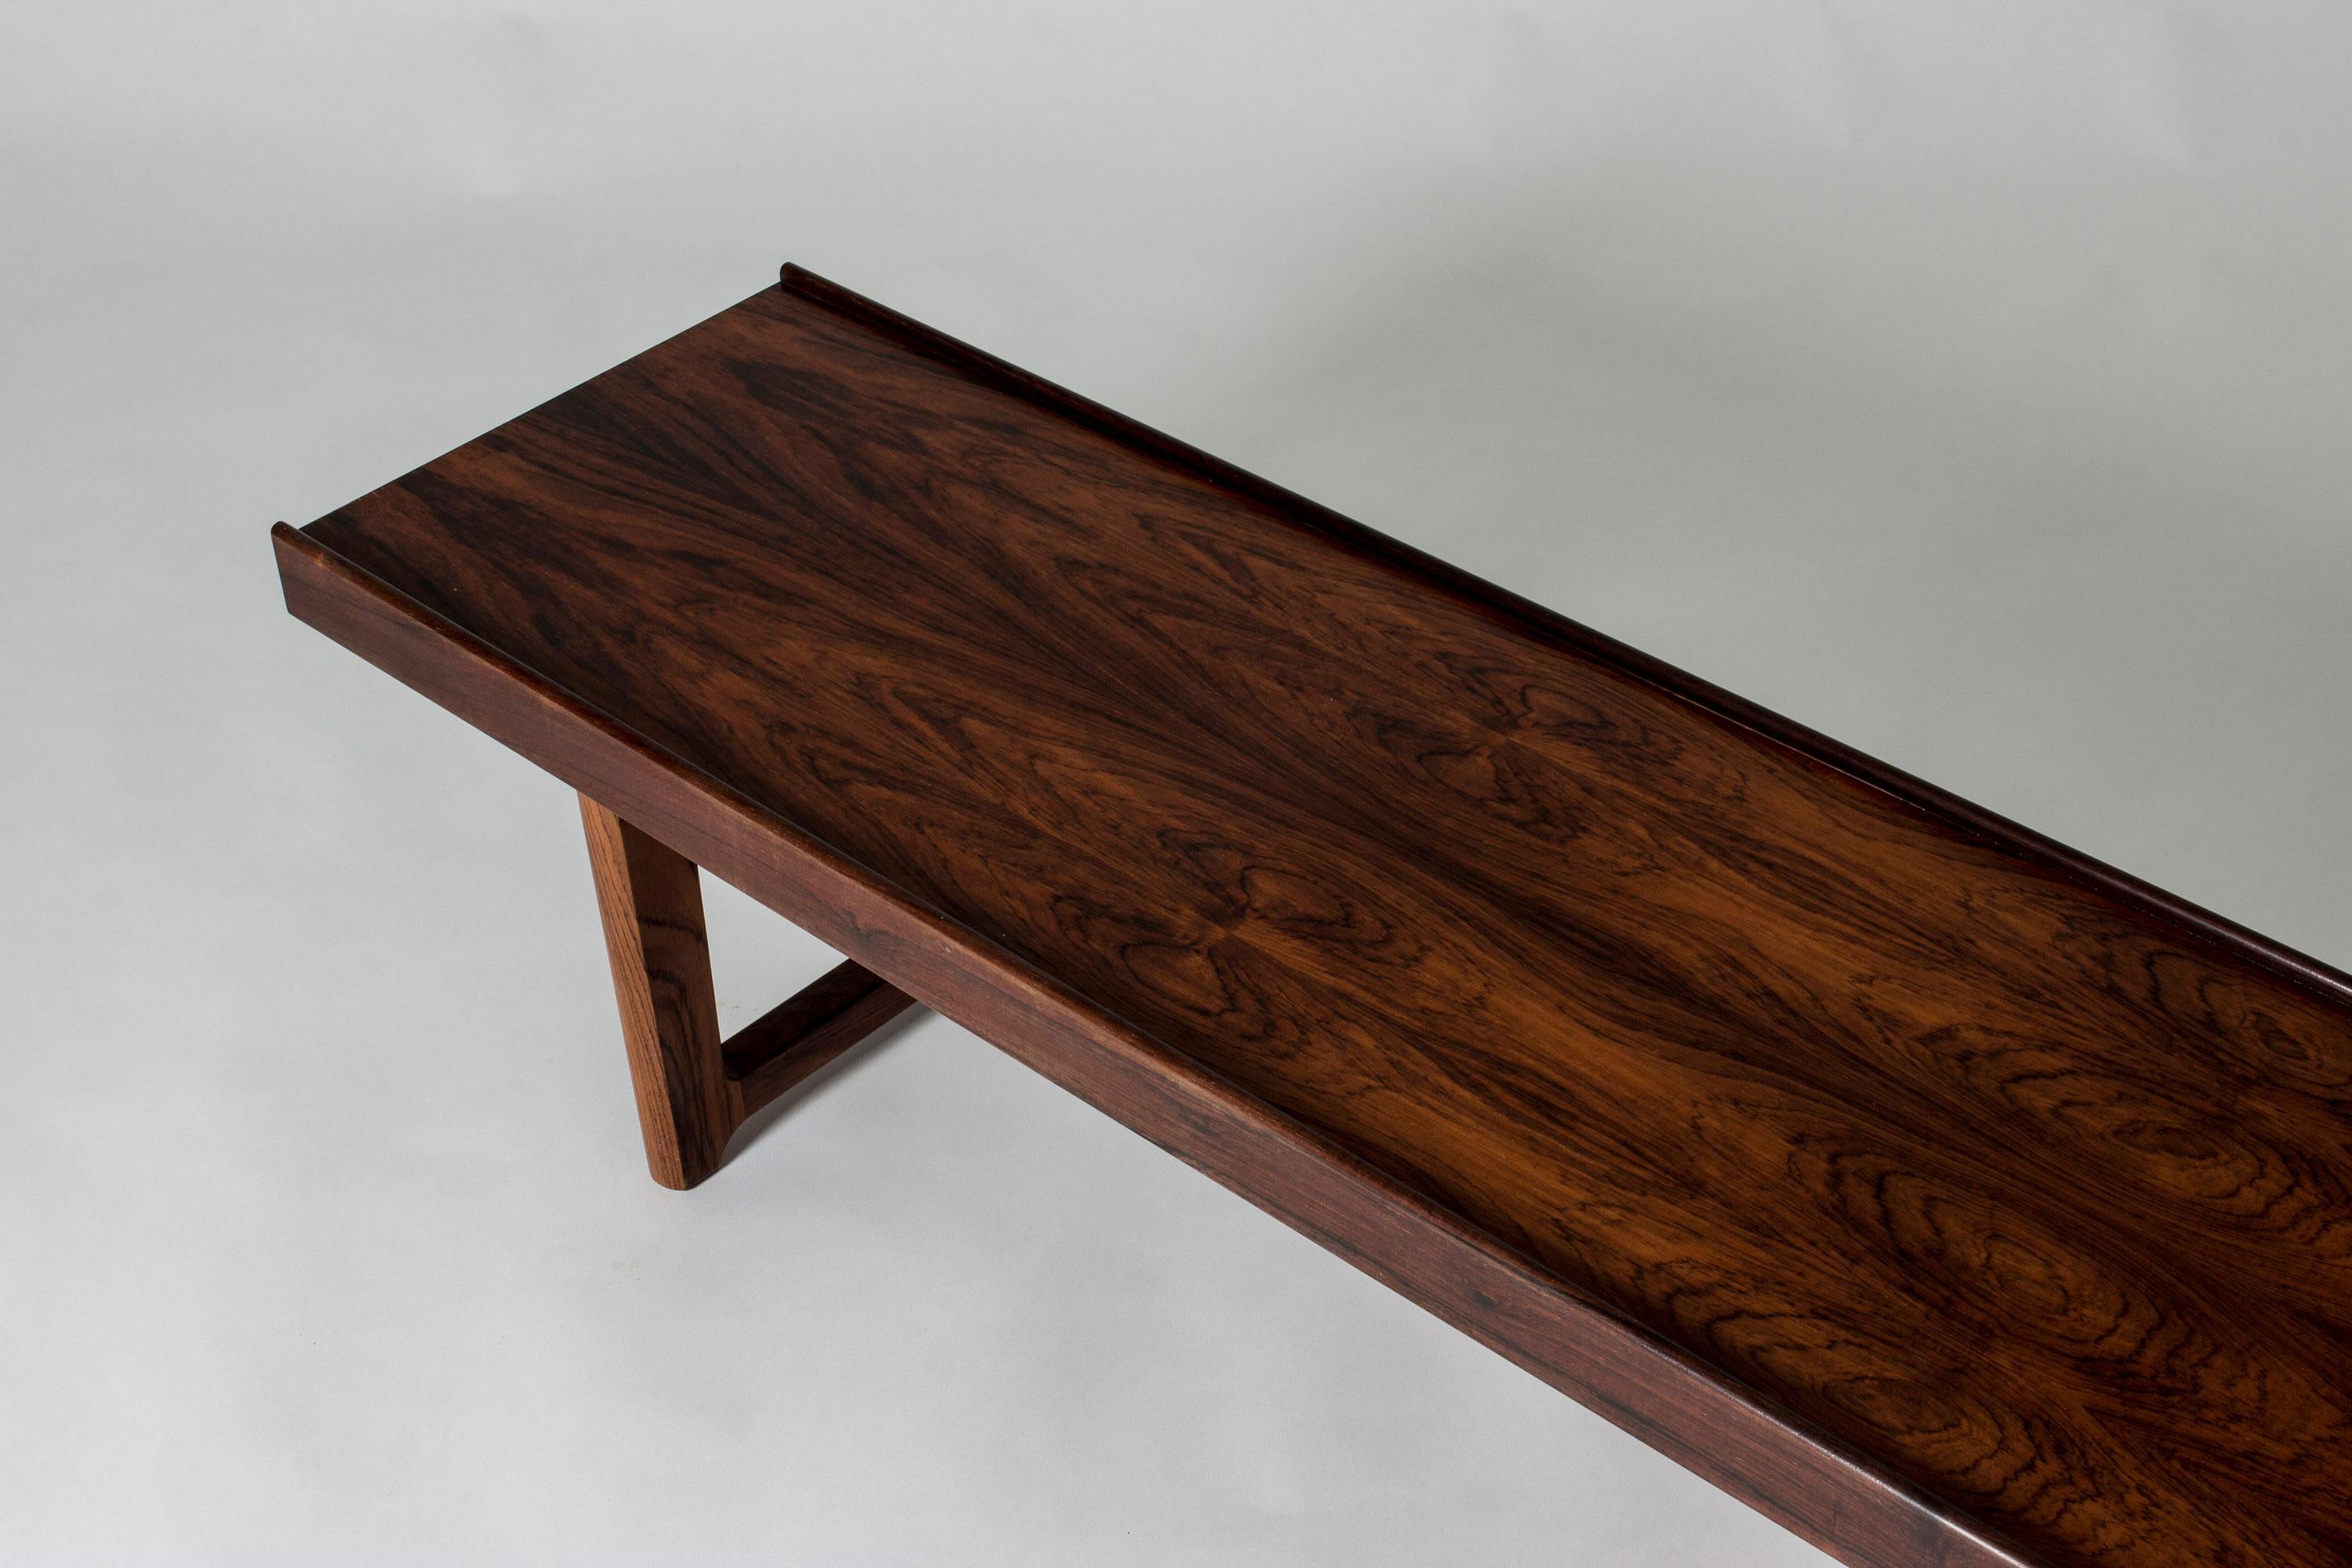 Sleek rosewood “Krobo” bench by Torbjørn Afdal, with black metal extenders underneath. Beautiful, saturated brown veneer. Great as a coffee table or room divider.